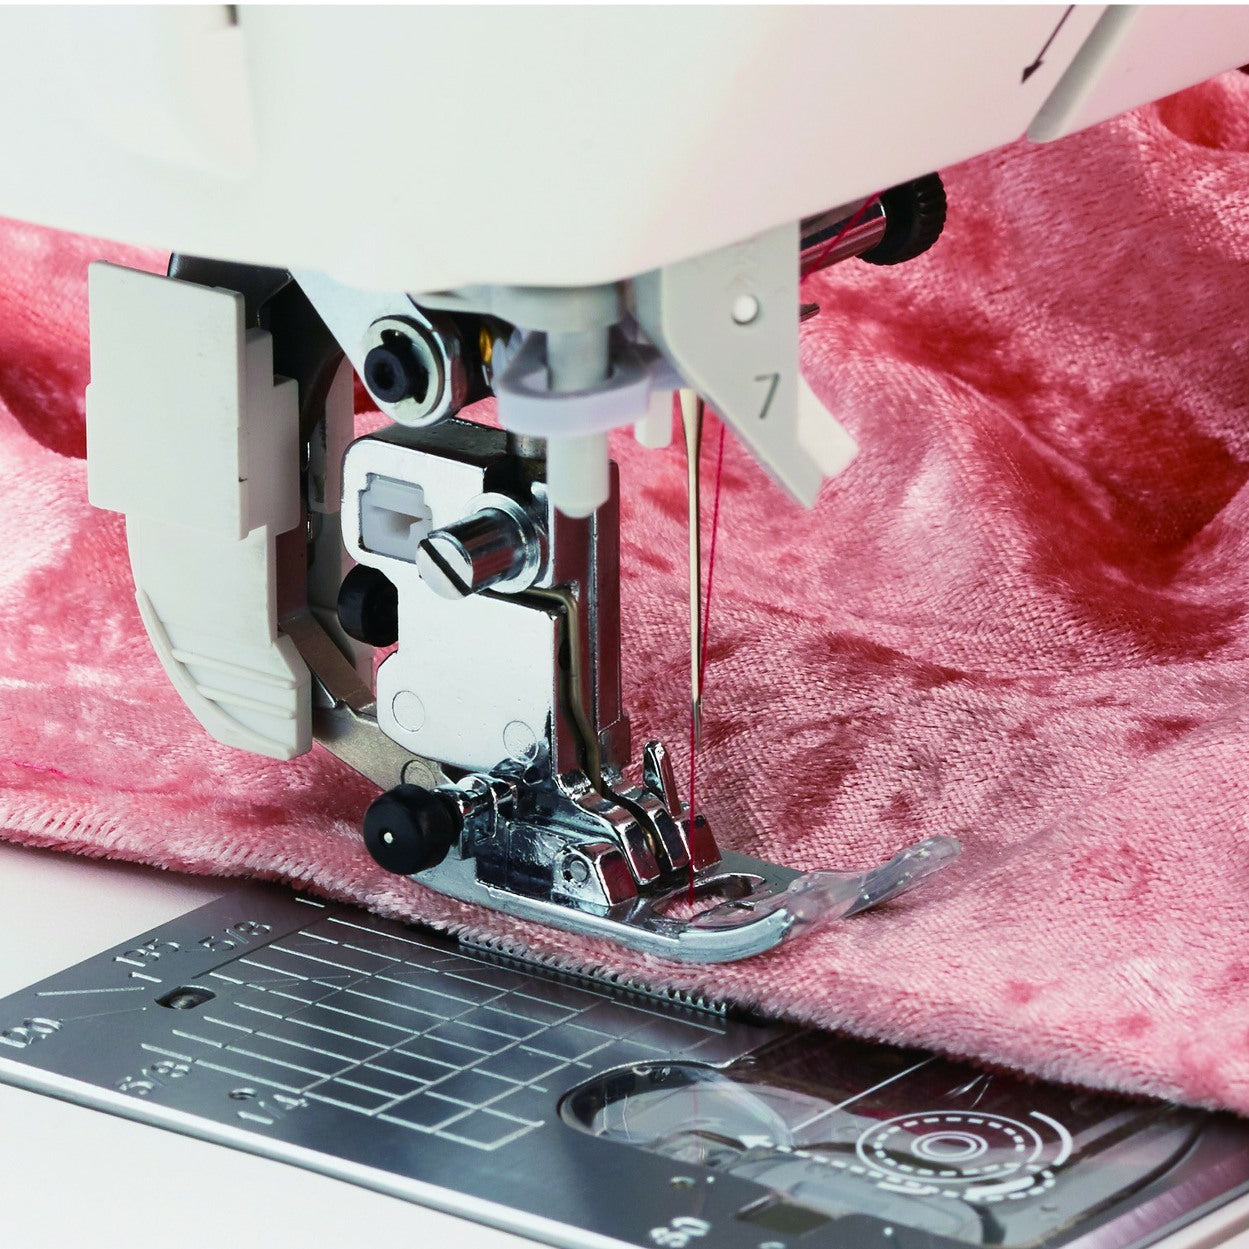 Juki NX7 Sewing Machine from Jaycotts Sewing Supplies